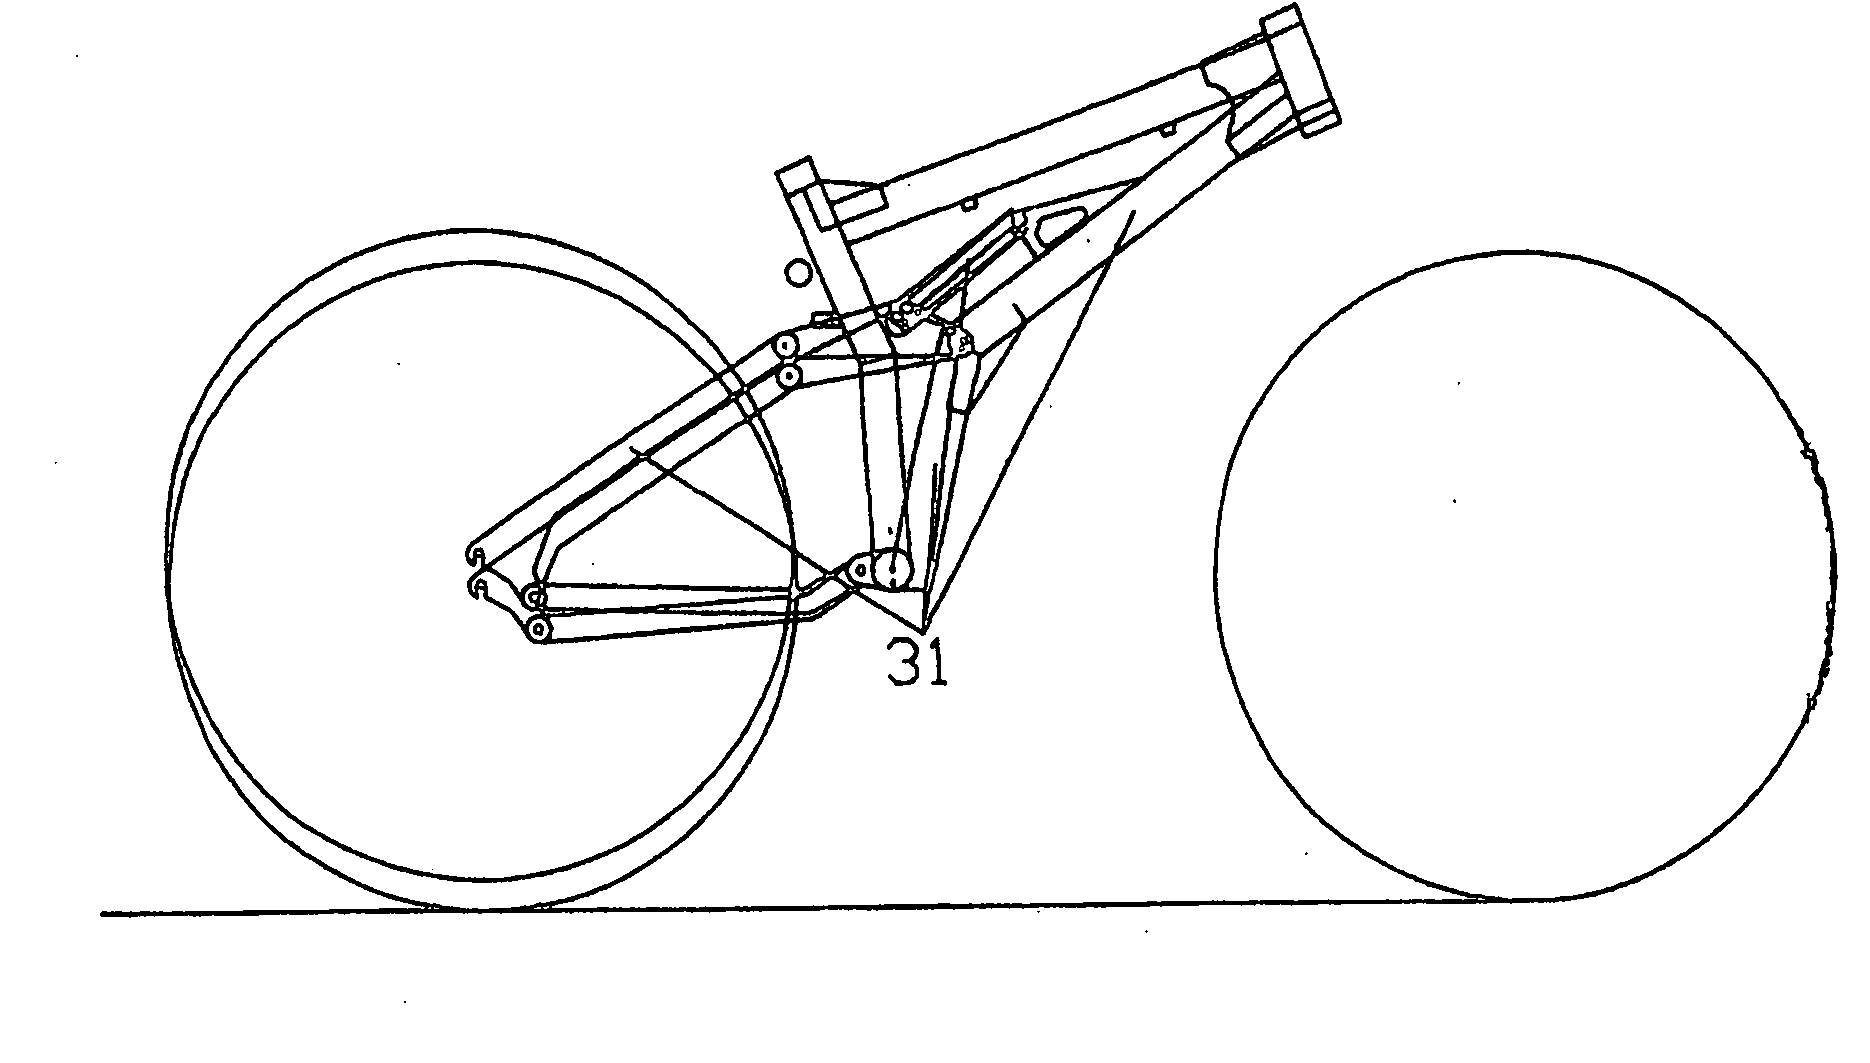 Force channeling mountain bike rear suspension